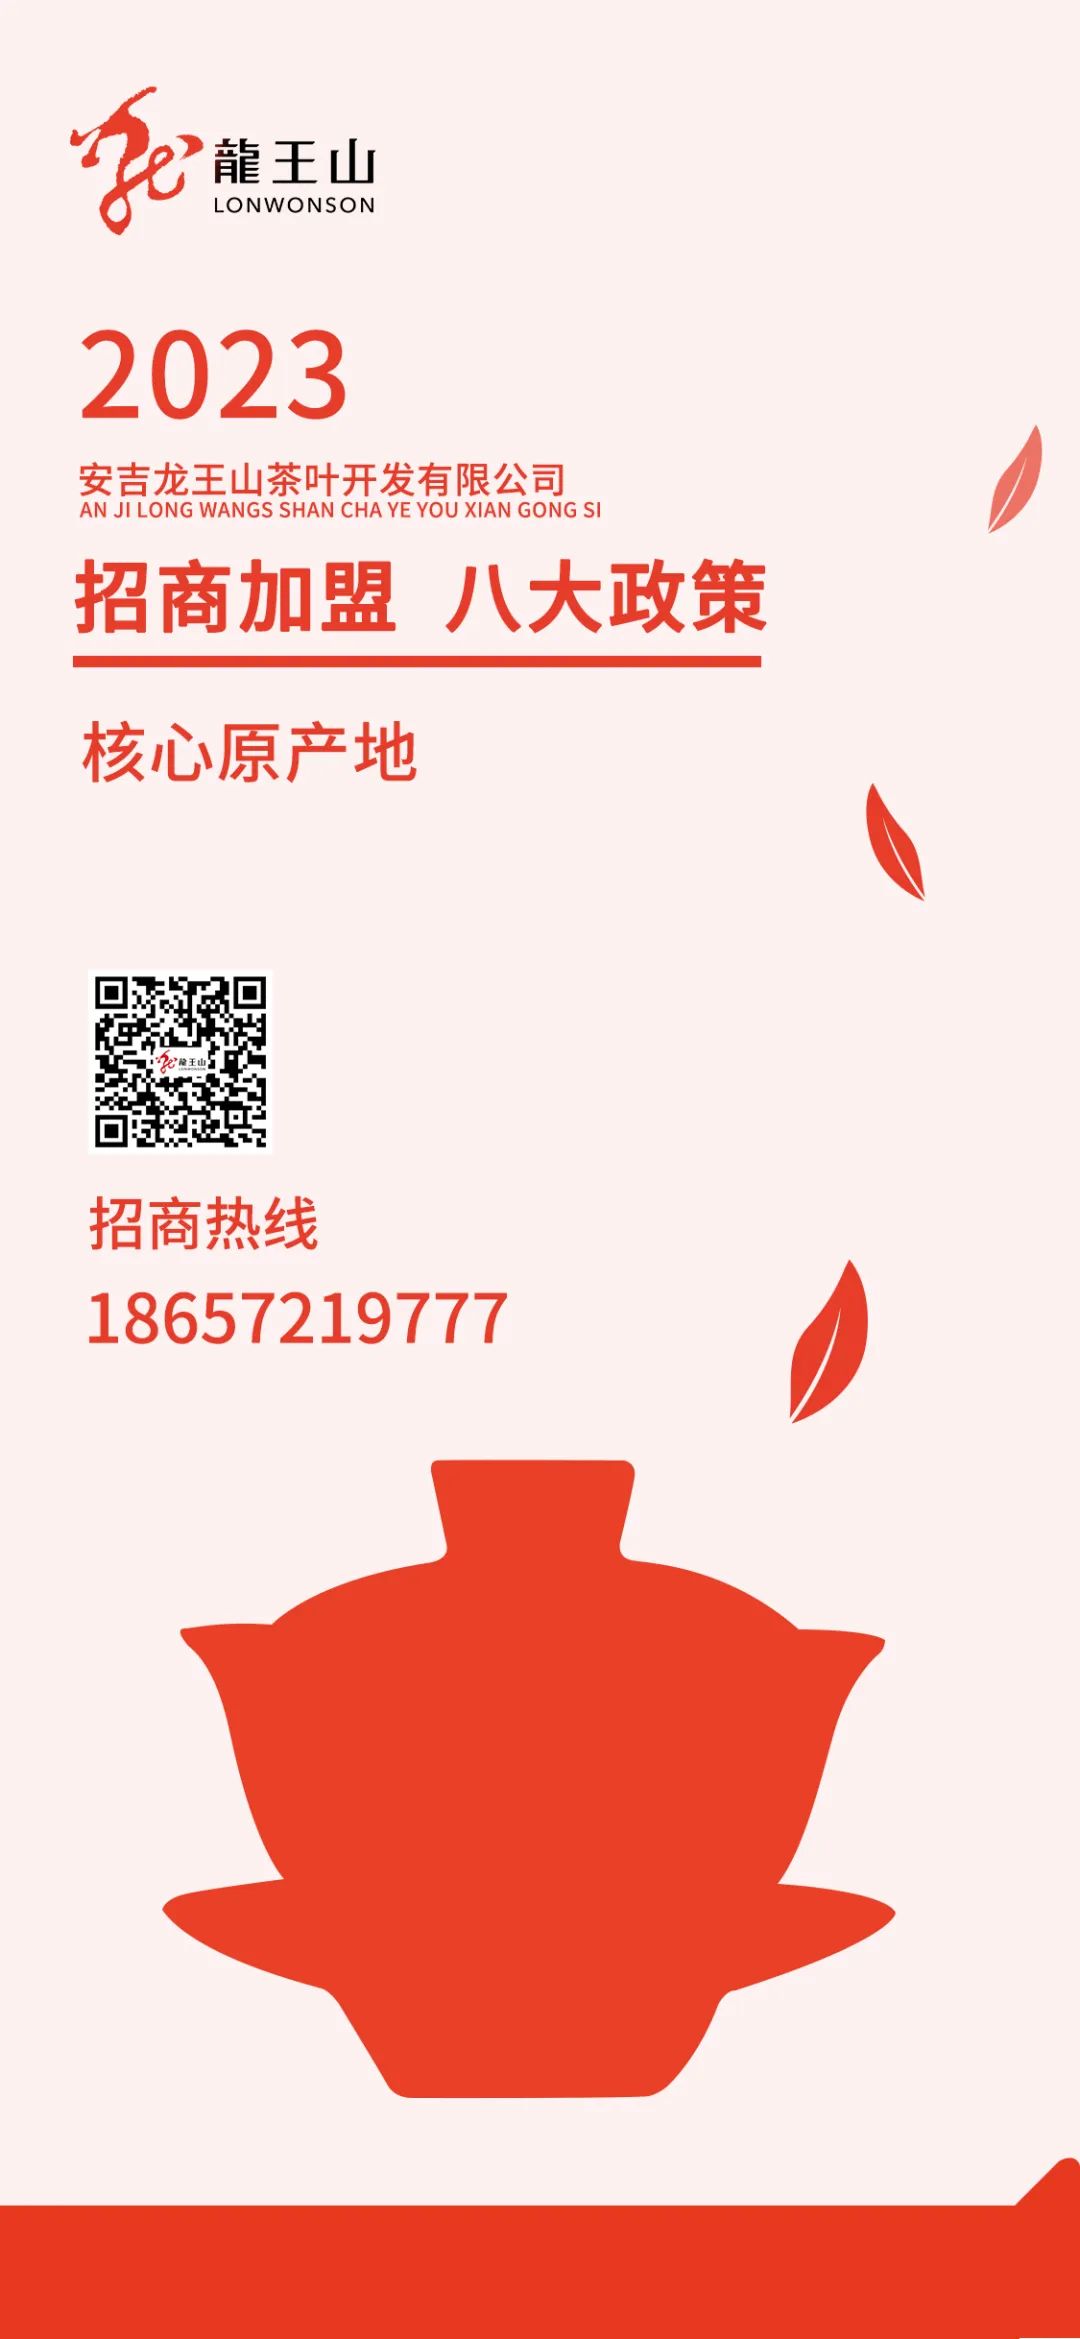 安吉白茶品牌价值_安吉白茶 品牌_安吉白茶品牌排行榜前十名